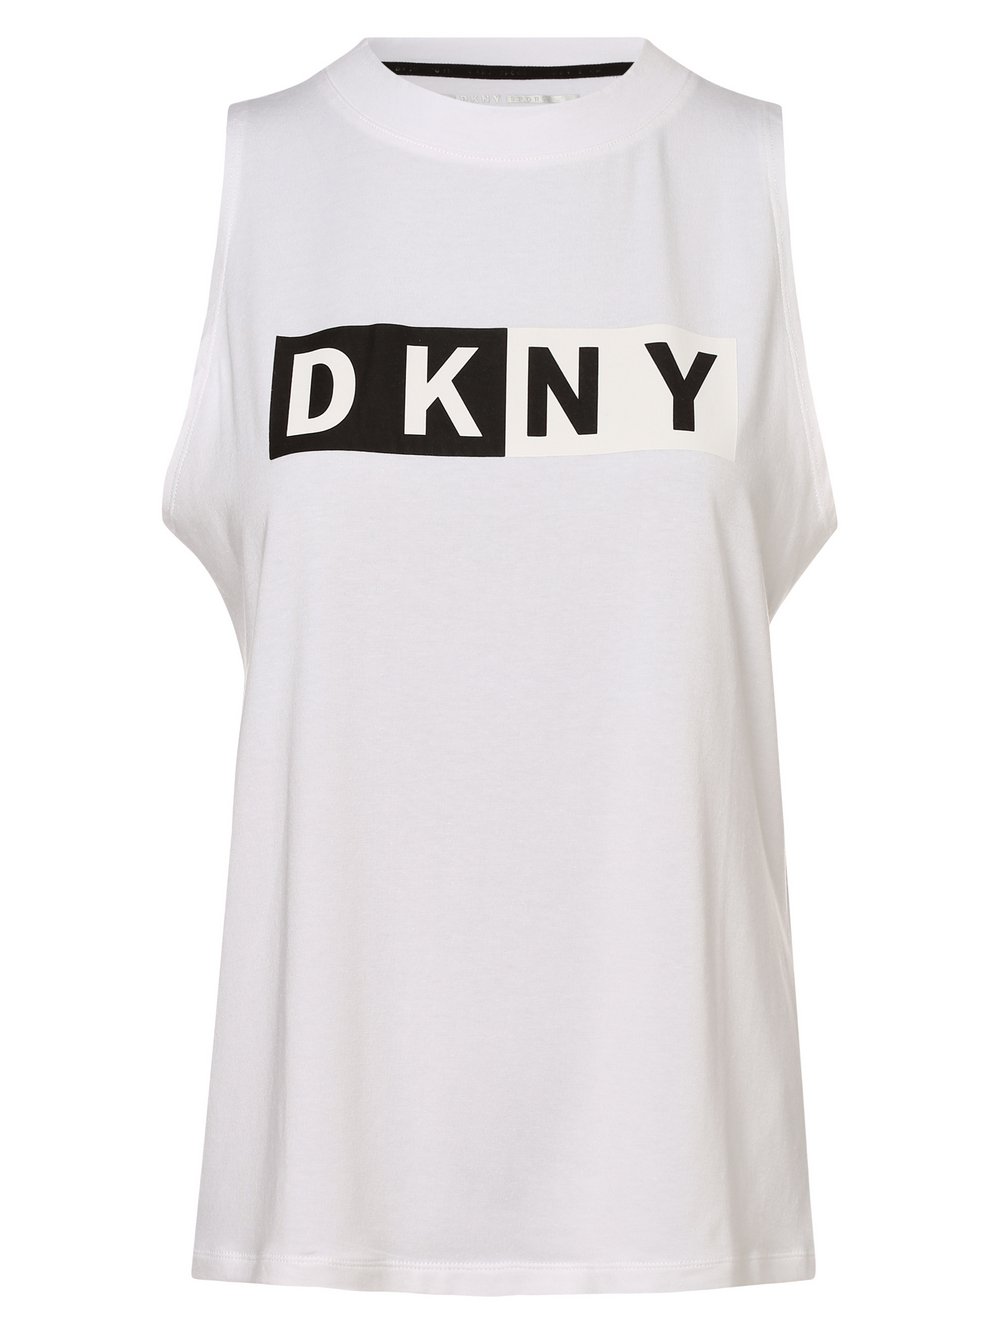 DKNY - Top damski, biały